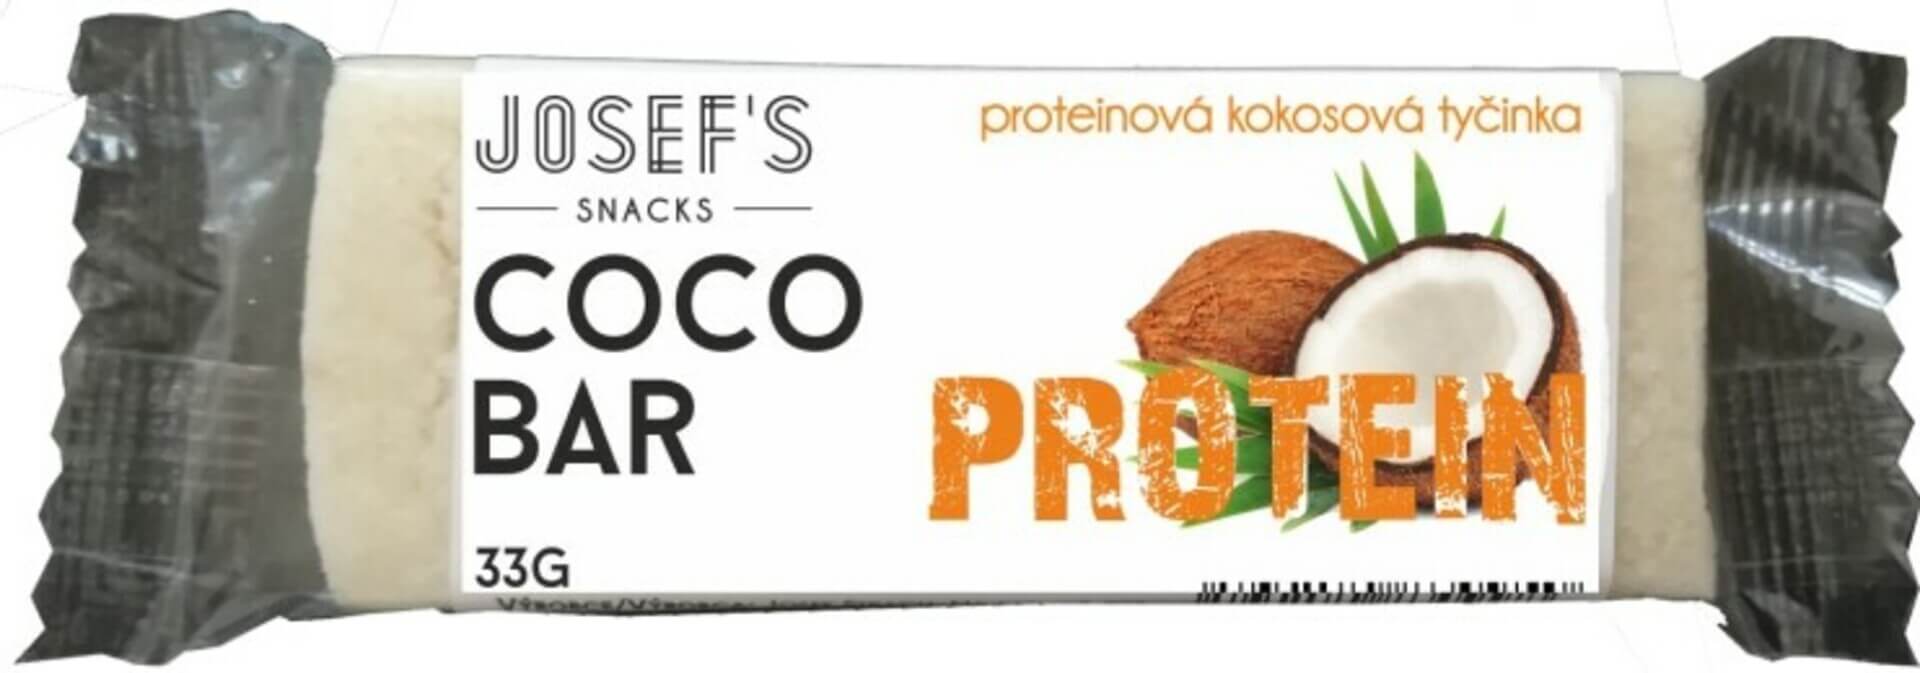 Josef's snacks Kokosová tyčinka s proteinem 33 g